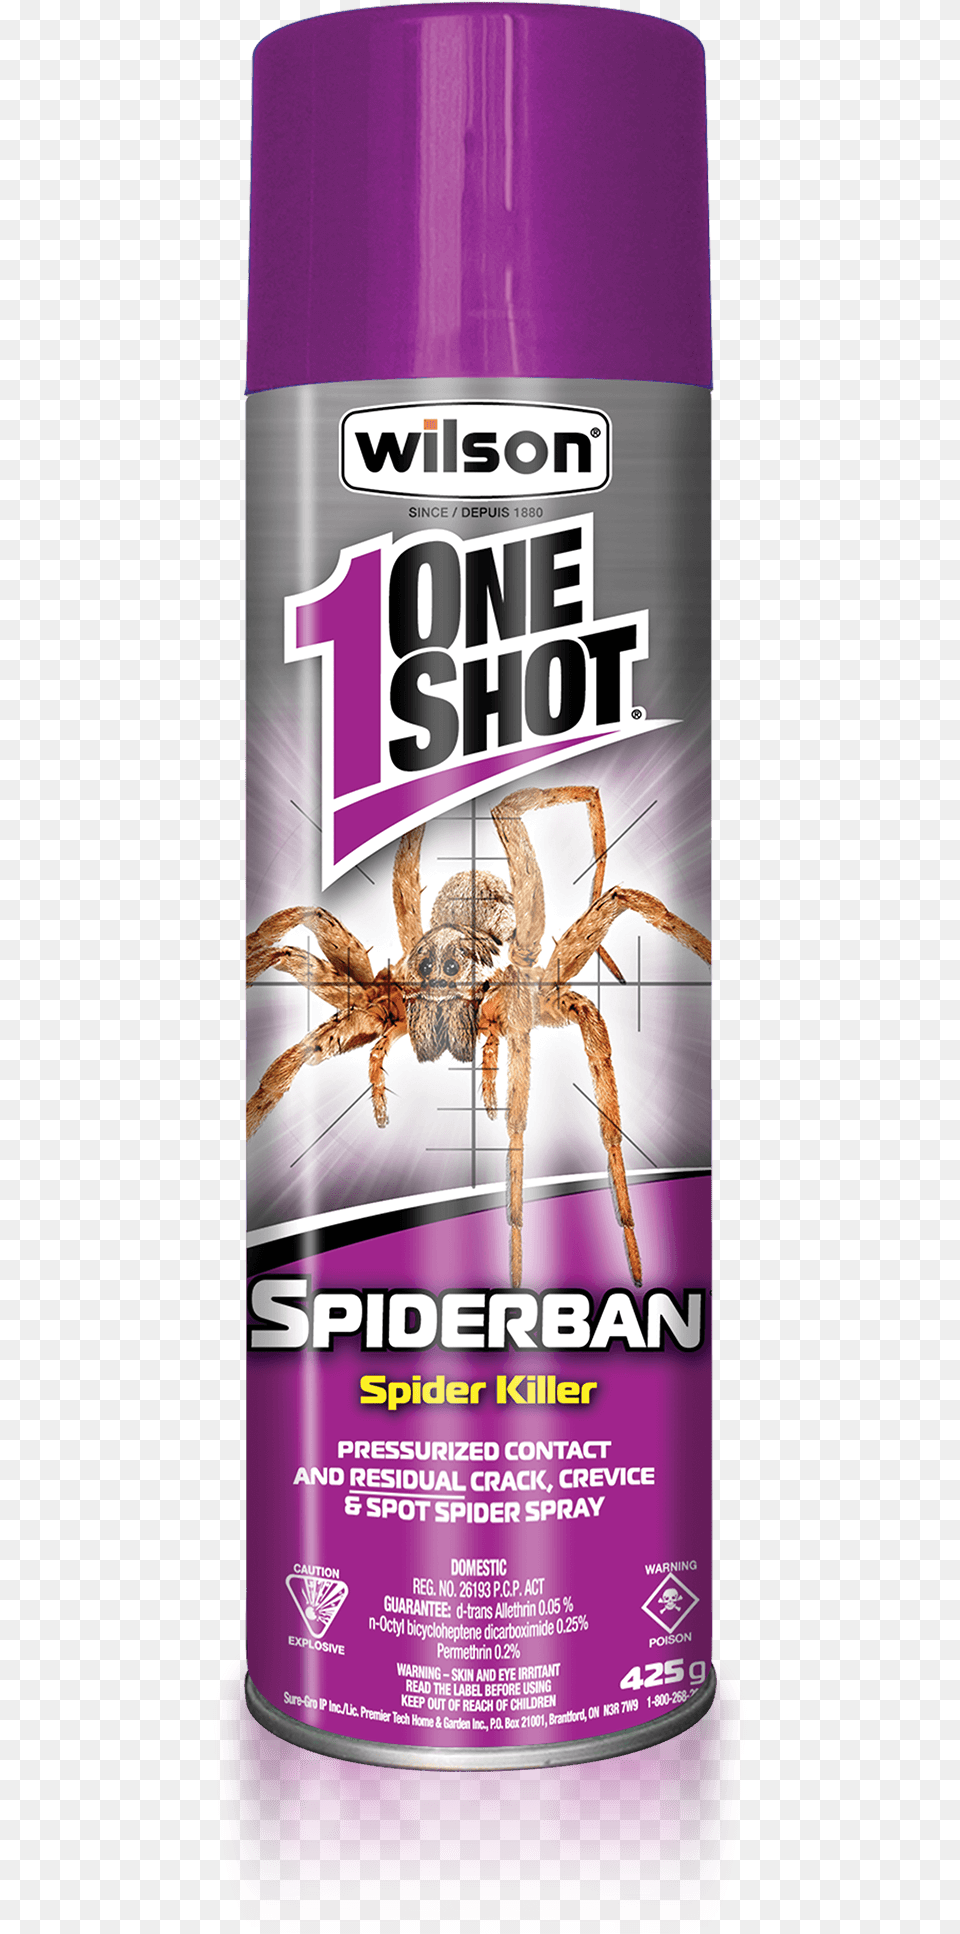 Wilson One Shot Spiderban Spider Killer 1 Shot Spider Spray, Animal, Invertebrate, Herbal, Herbs Free Transparent Png